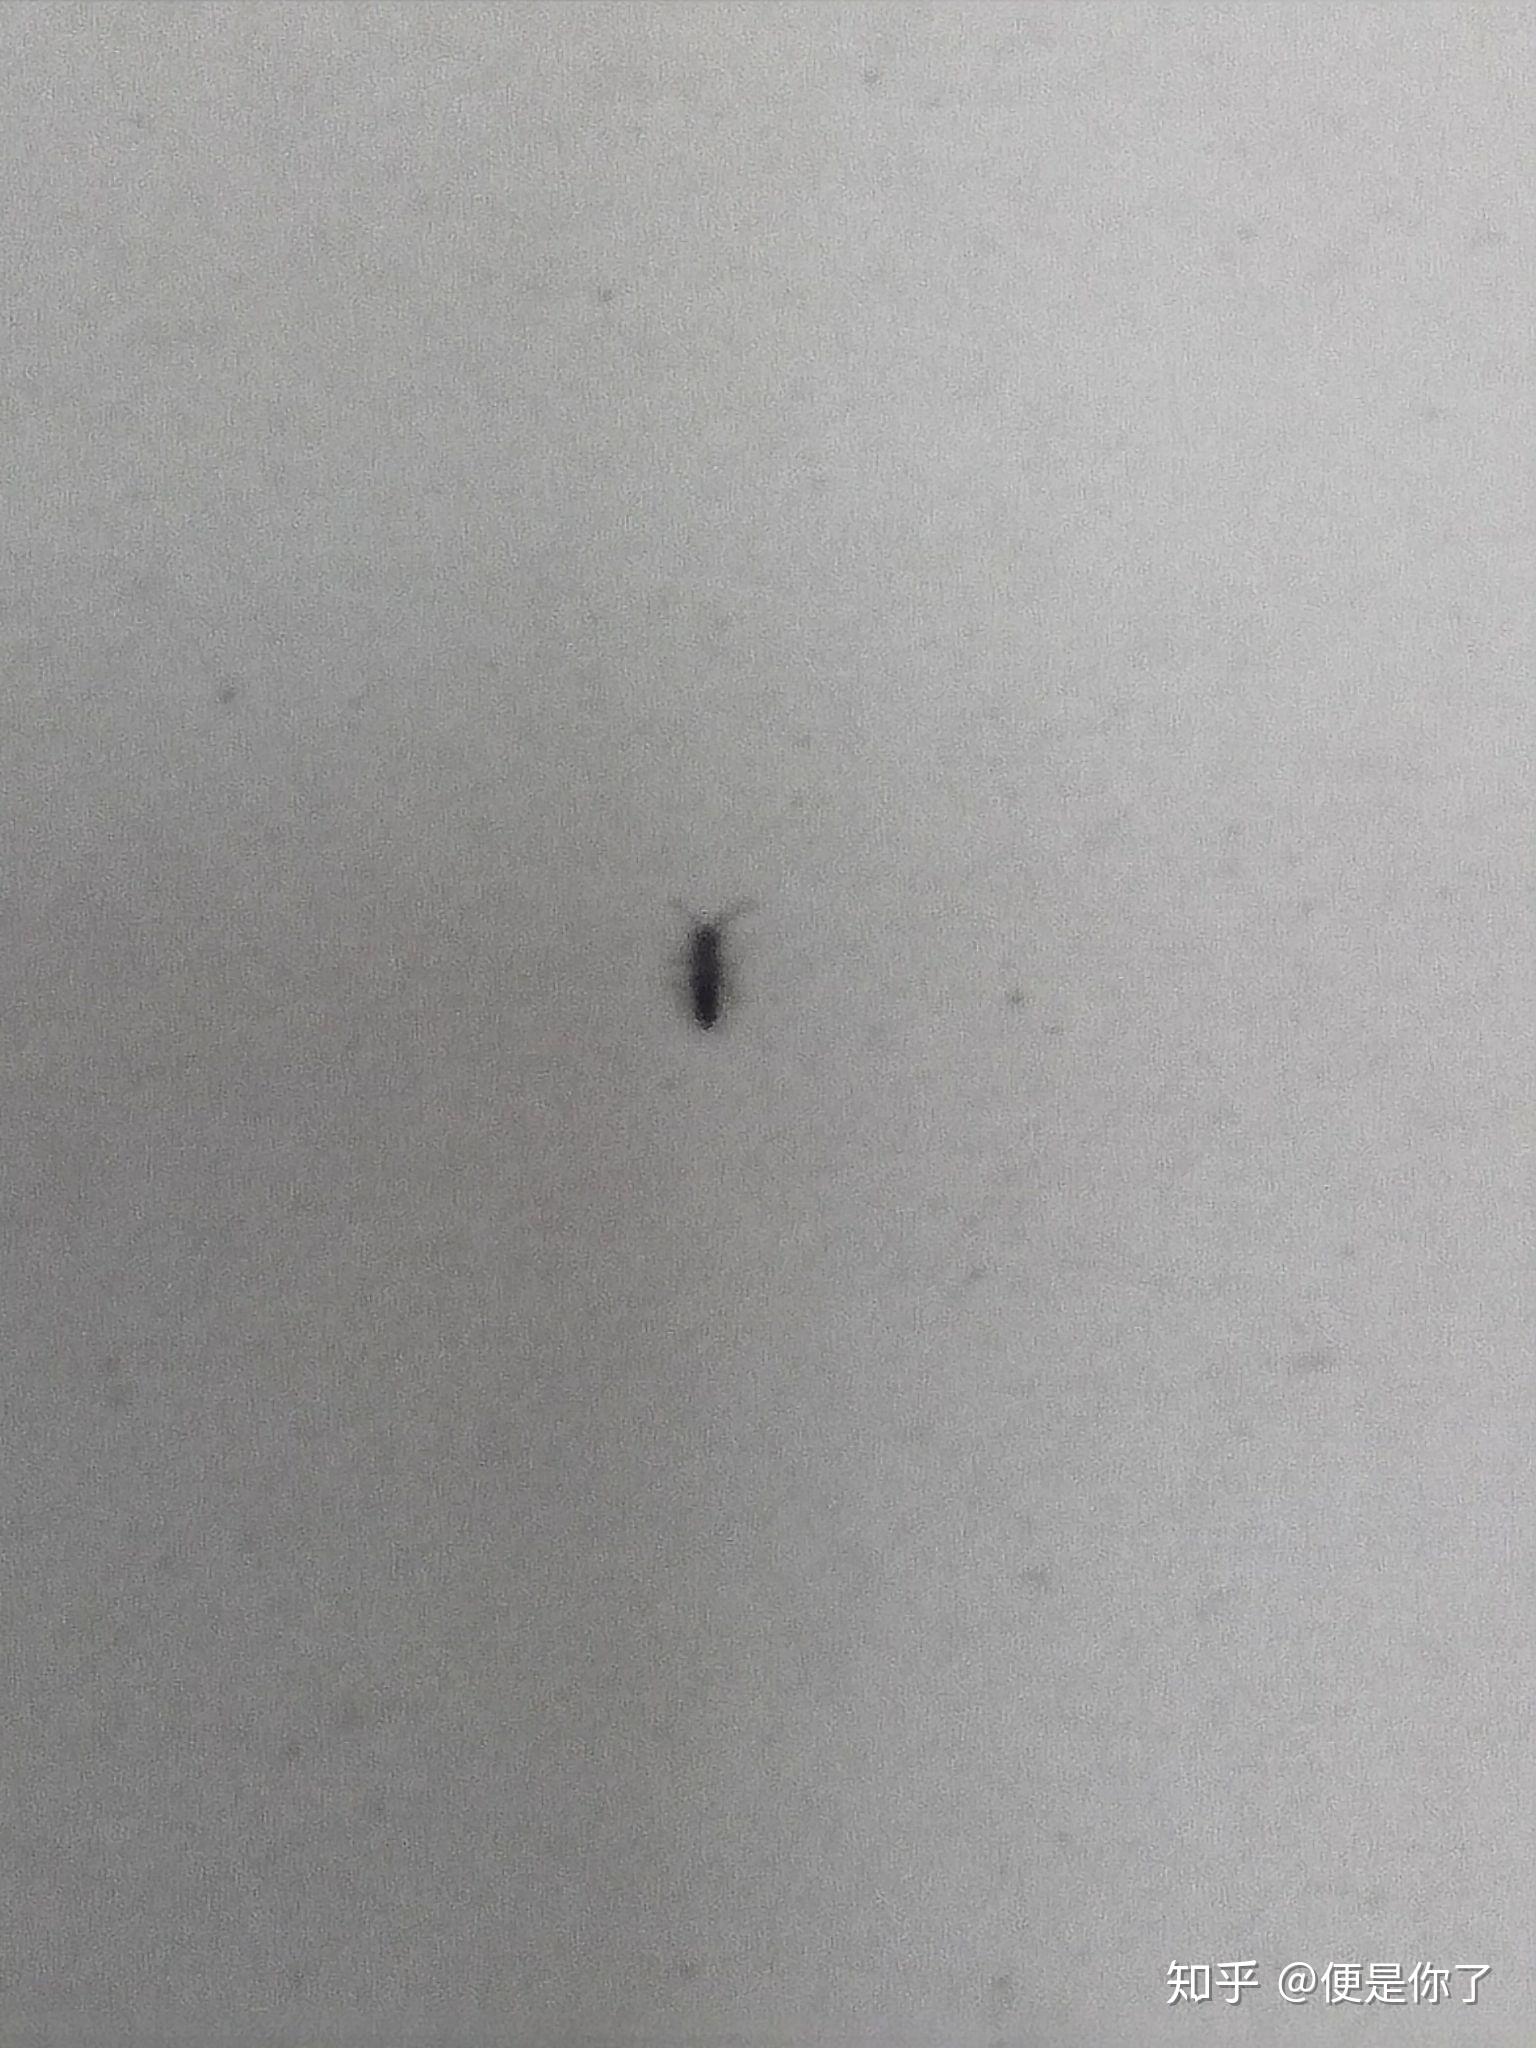 家里最近出了一些小黑虫子，请帮忙解答是什么_百度知道